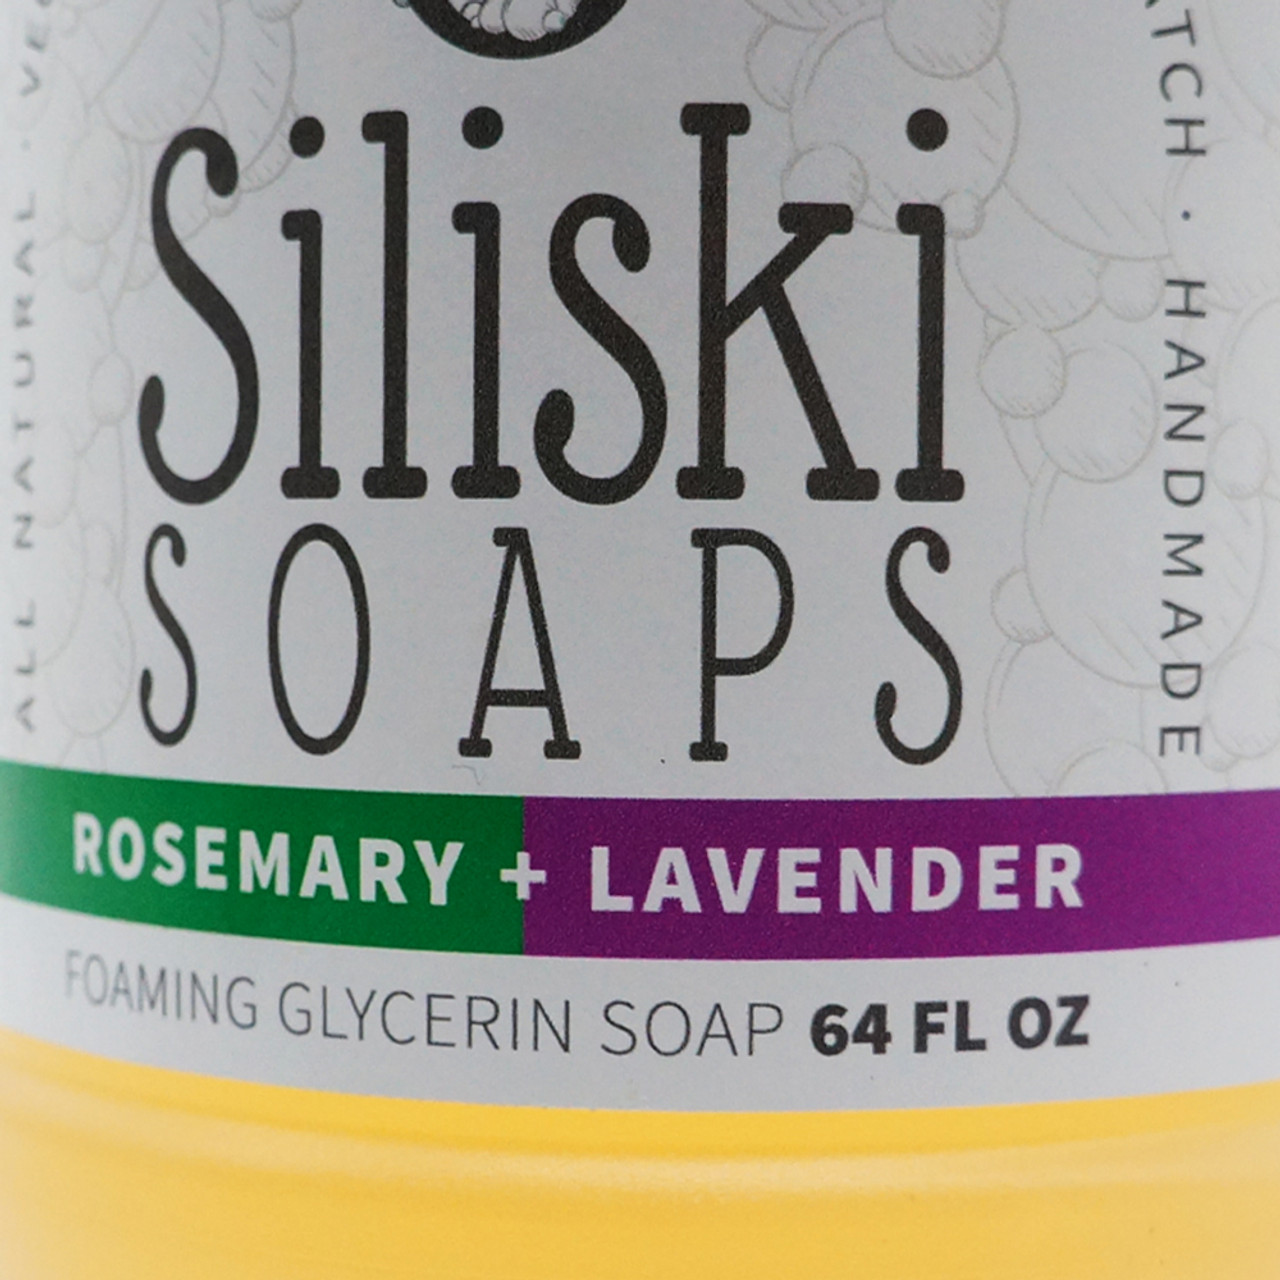 Foaming Glycerin Soap - Lavender - Siliski Soaps